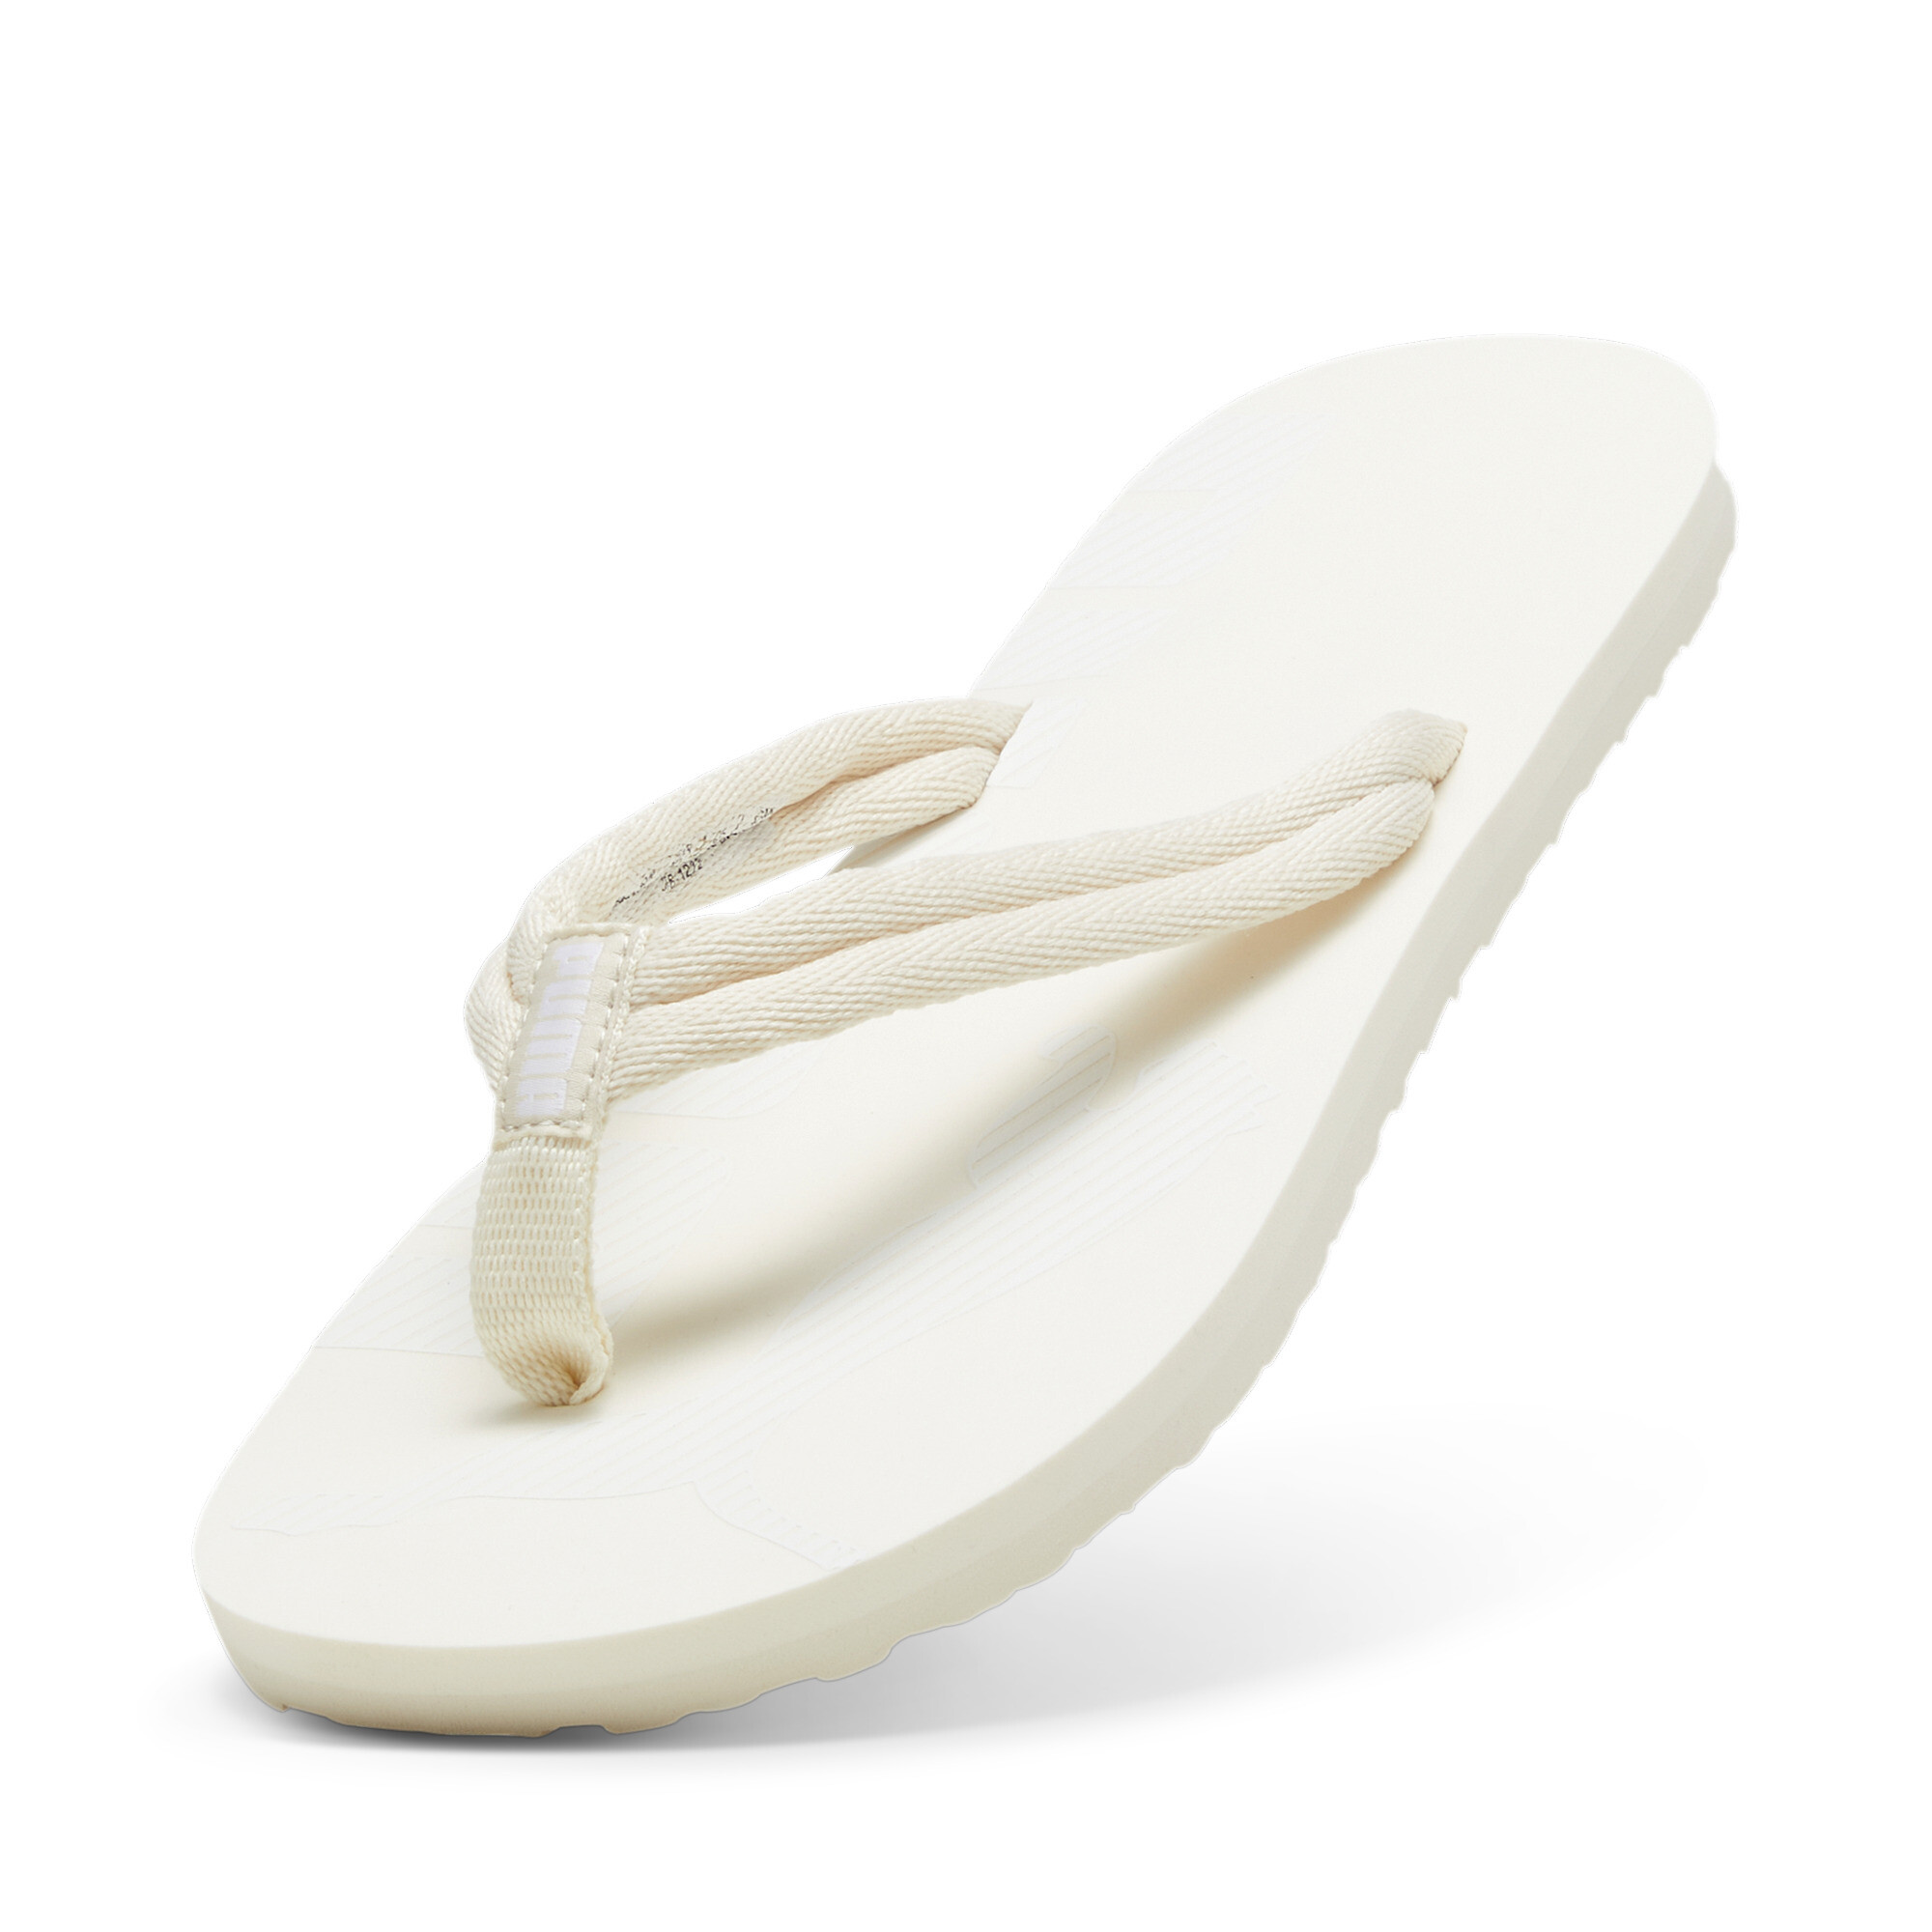 Men's PUMA Epic Flip V2 Sandals In White, Size EU 38